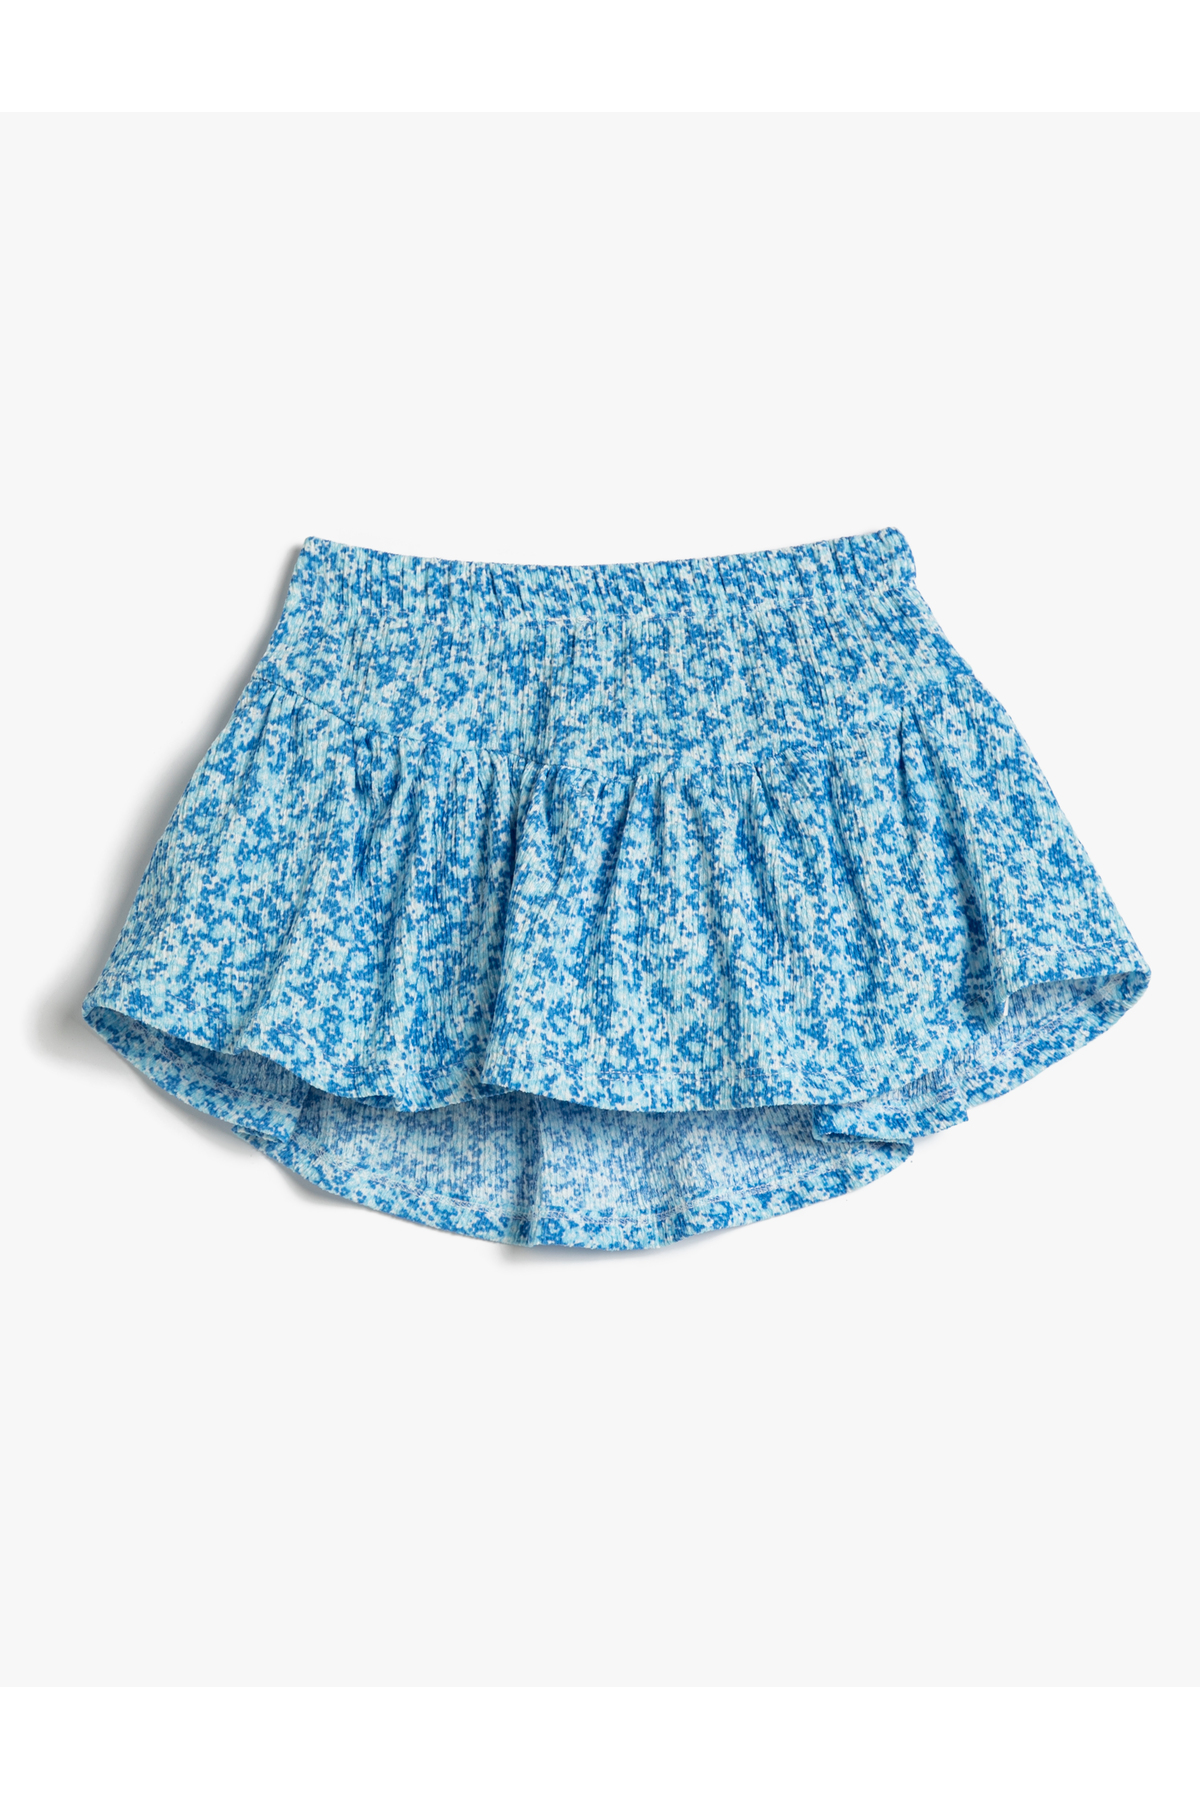 Levně Koton Floral Skirt Elastic Waist Pleated Textured